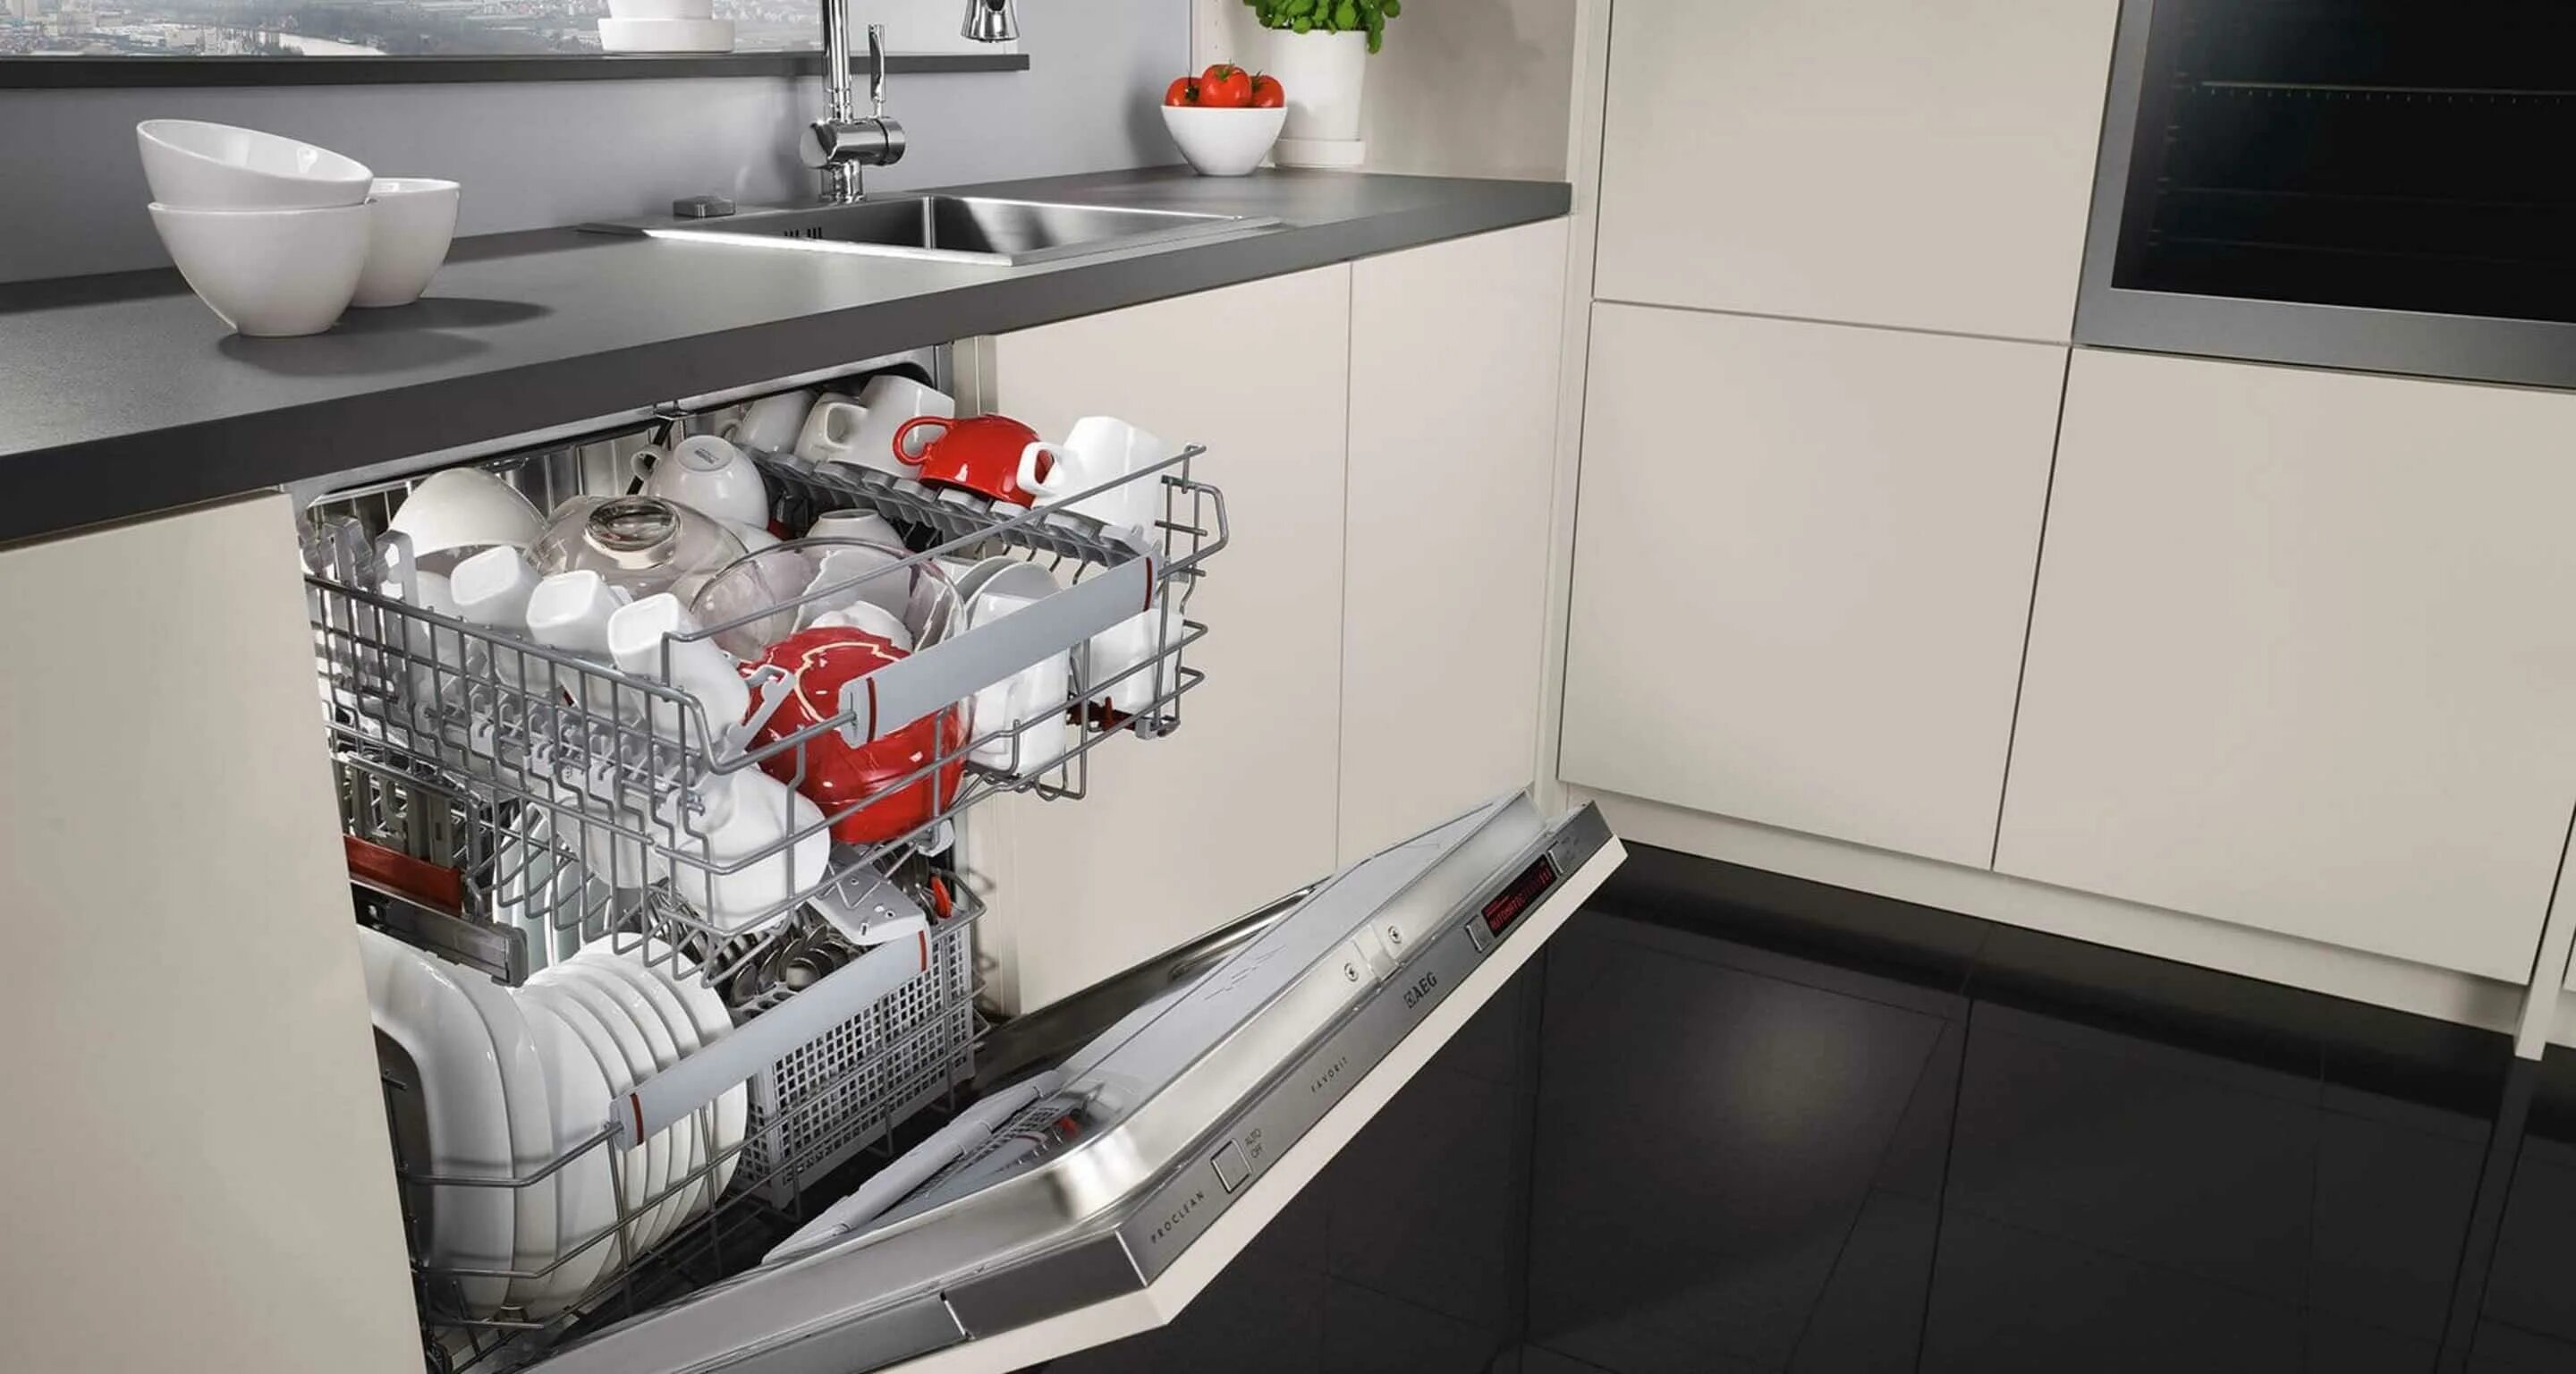 Хорошая посудомойка встроенная 45. ПММ 450 встраиваемая под фасад 600. Топ посудомоечных машин 60 см встраиваемая 2020. Встроенная компактная ПММ 600. Посудомойка 45 см встраиваемая.